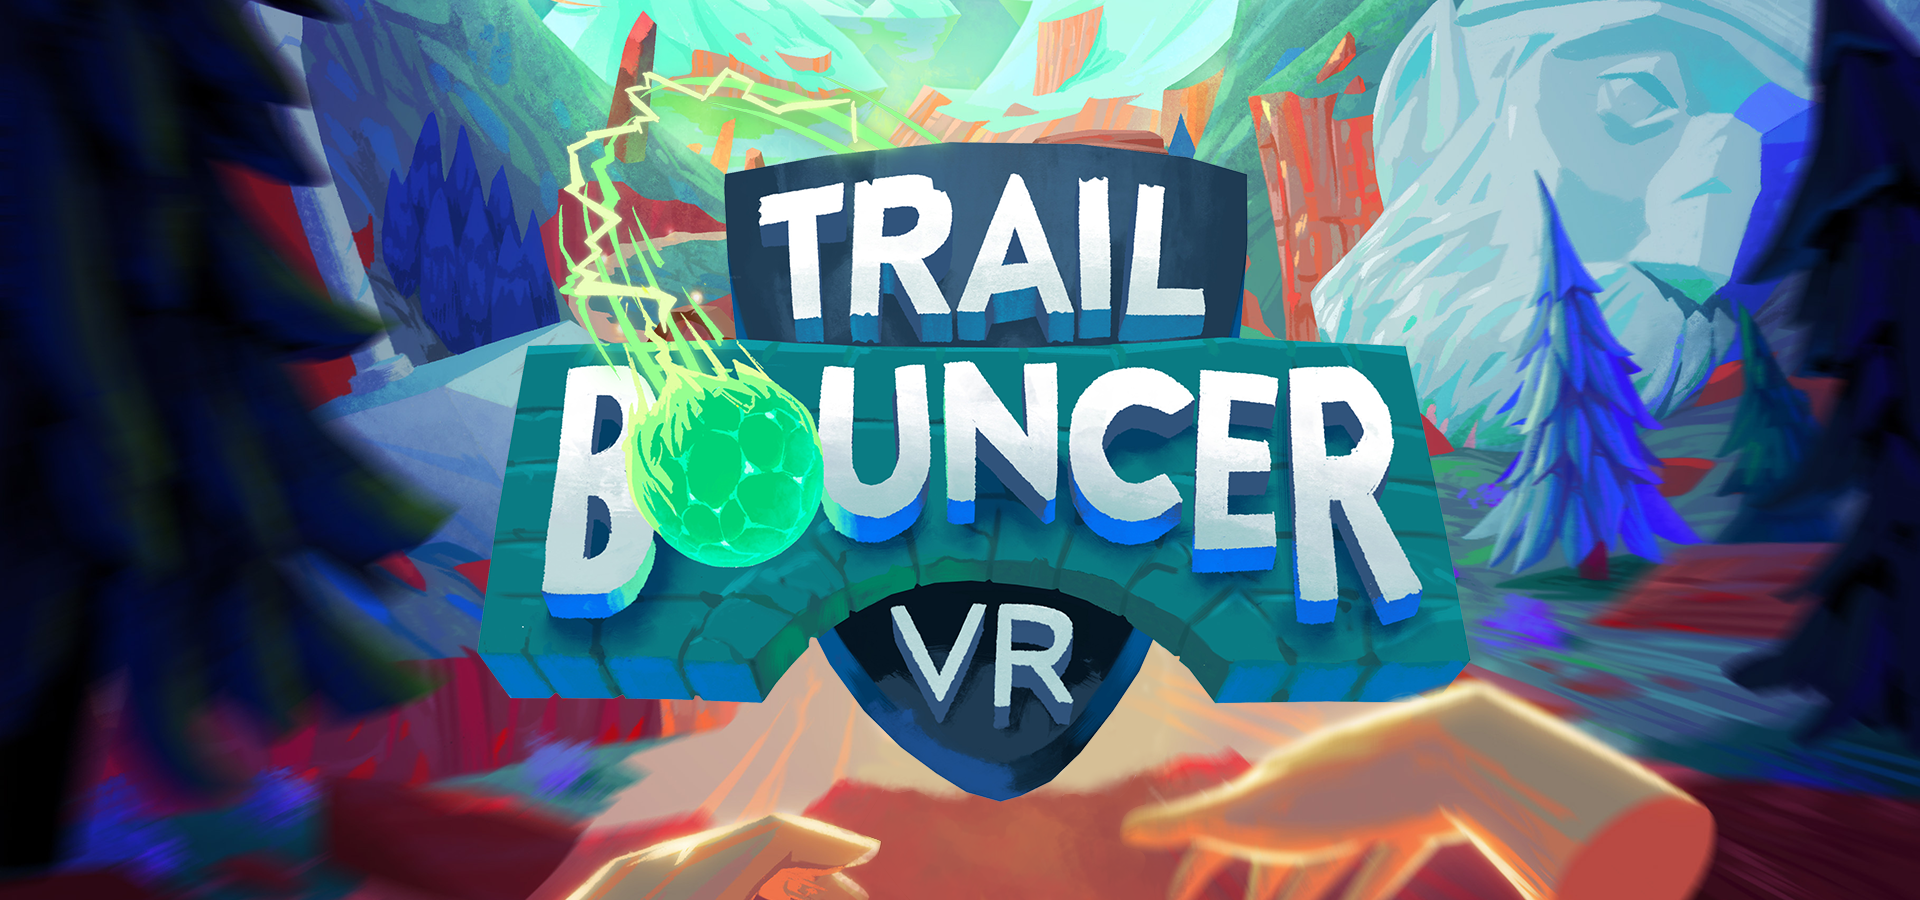 TrailBouncer VR